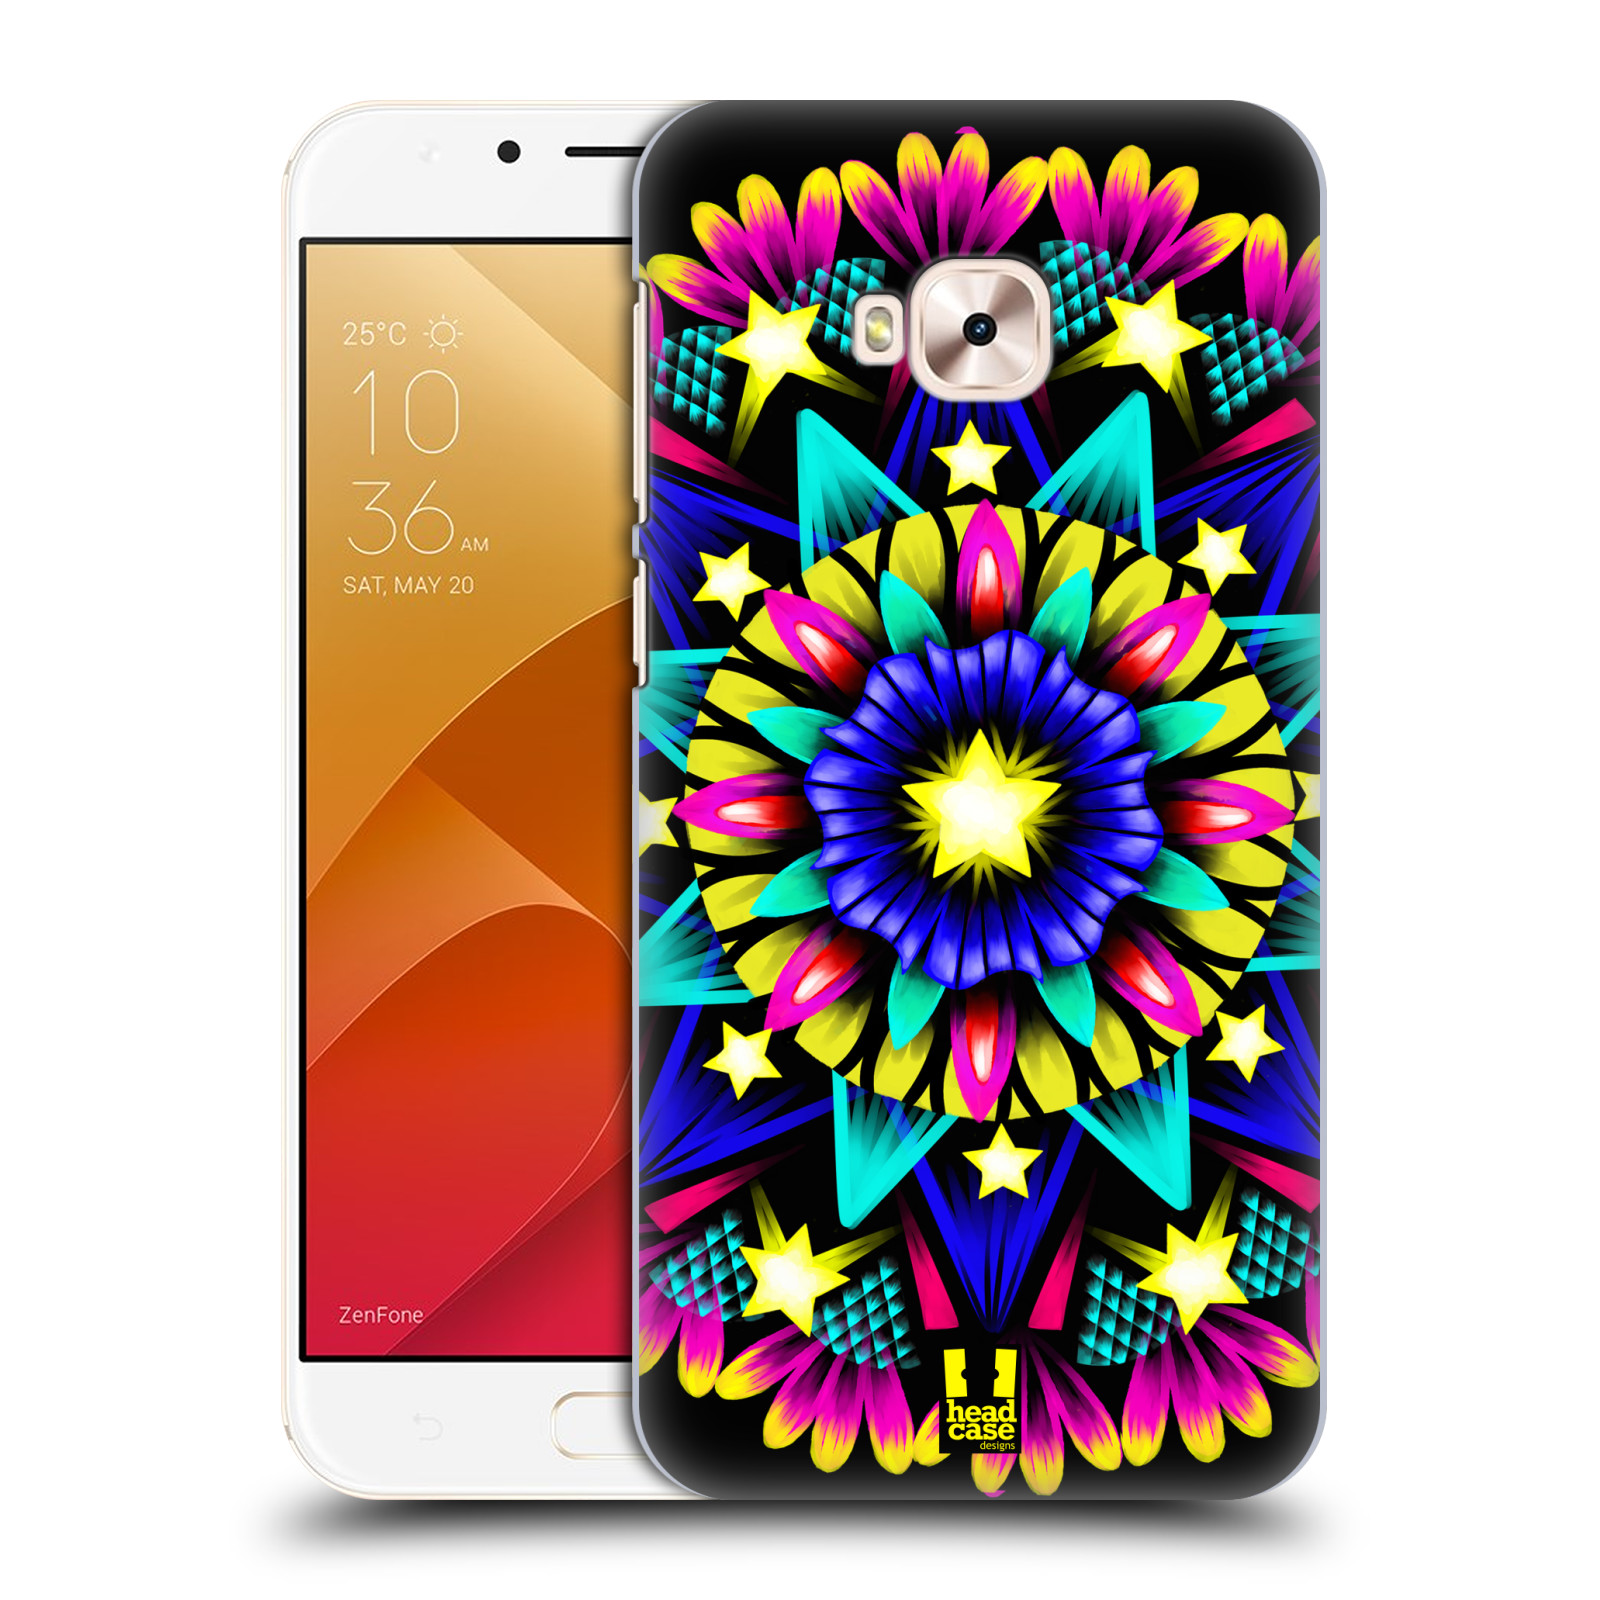 HEAD CASE plastový obal na mobil Asus Zenfone 4 Selfie Pro ZD552KL vzor Indie Mandala kaleidoskop barevný vzor HVĚZDA